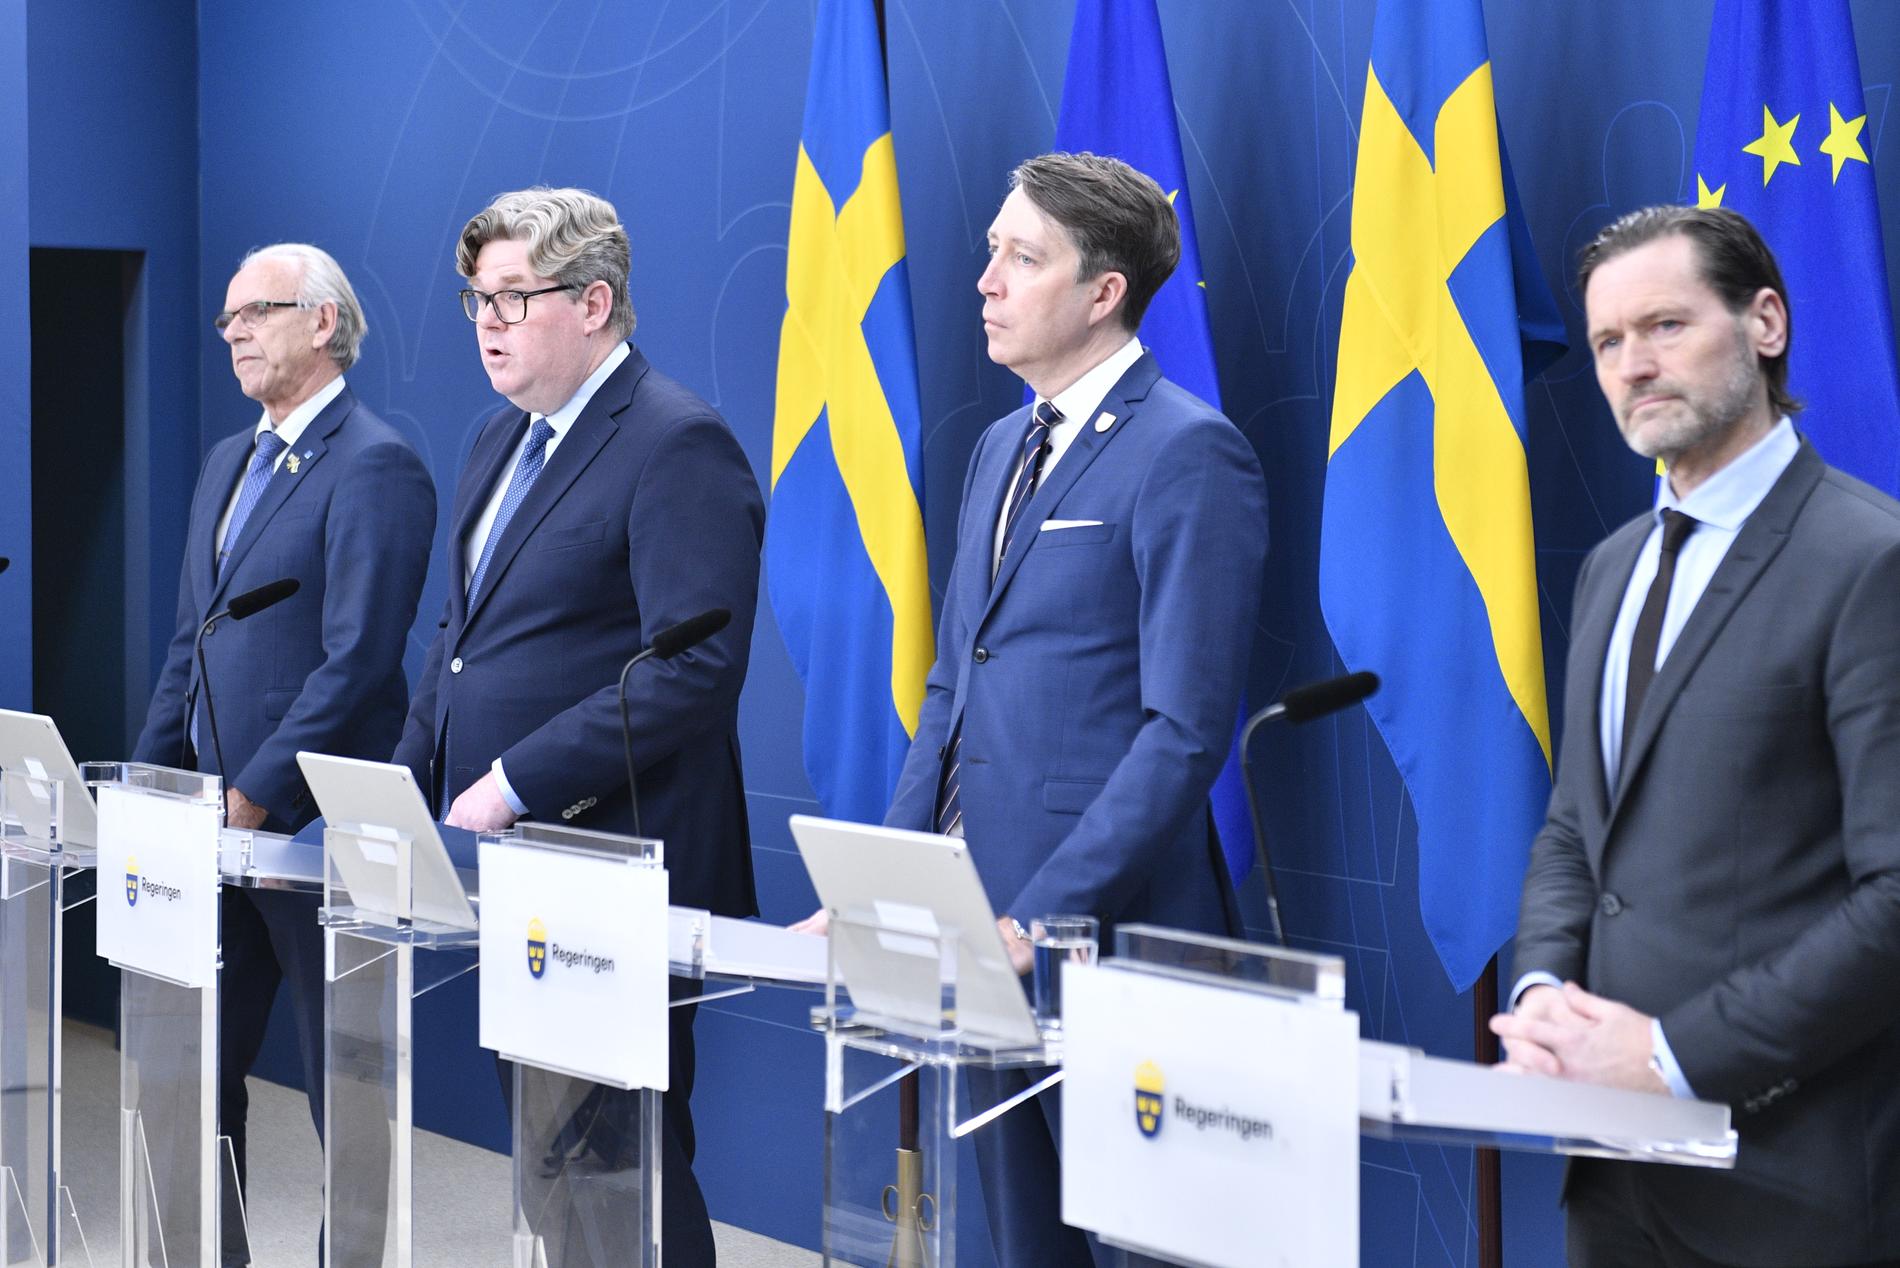 Justitieminister Gunnar Strömmer (M) när han tillsammans med Richard Jomshof (SD), Torsten Elofsson (KD) och Martin Melin (L) presenterade förslaget om visitationszoner.